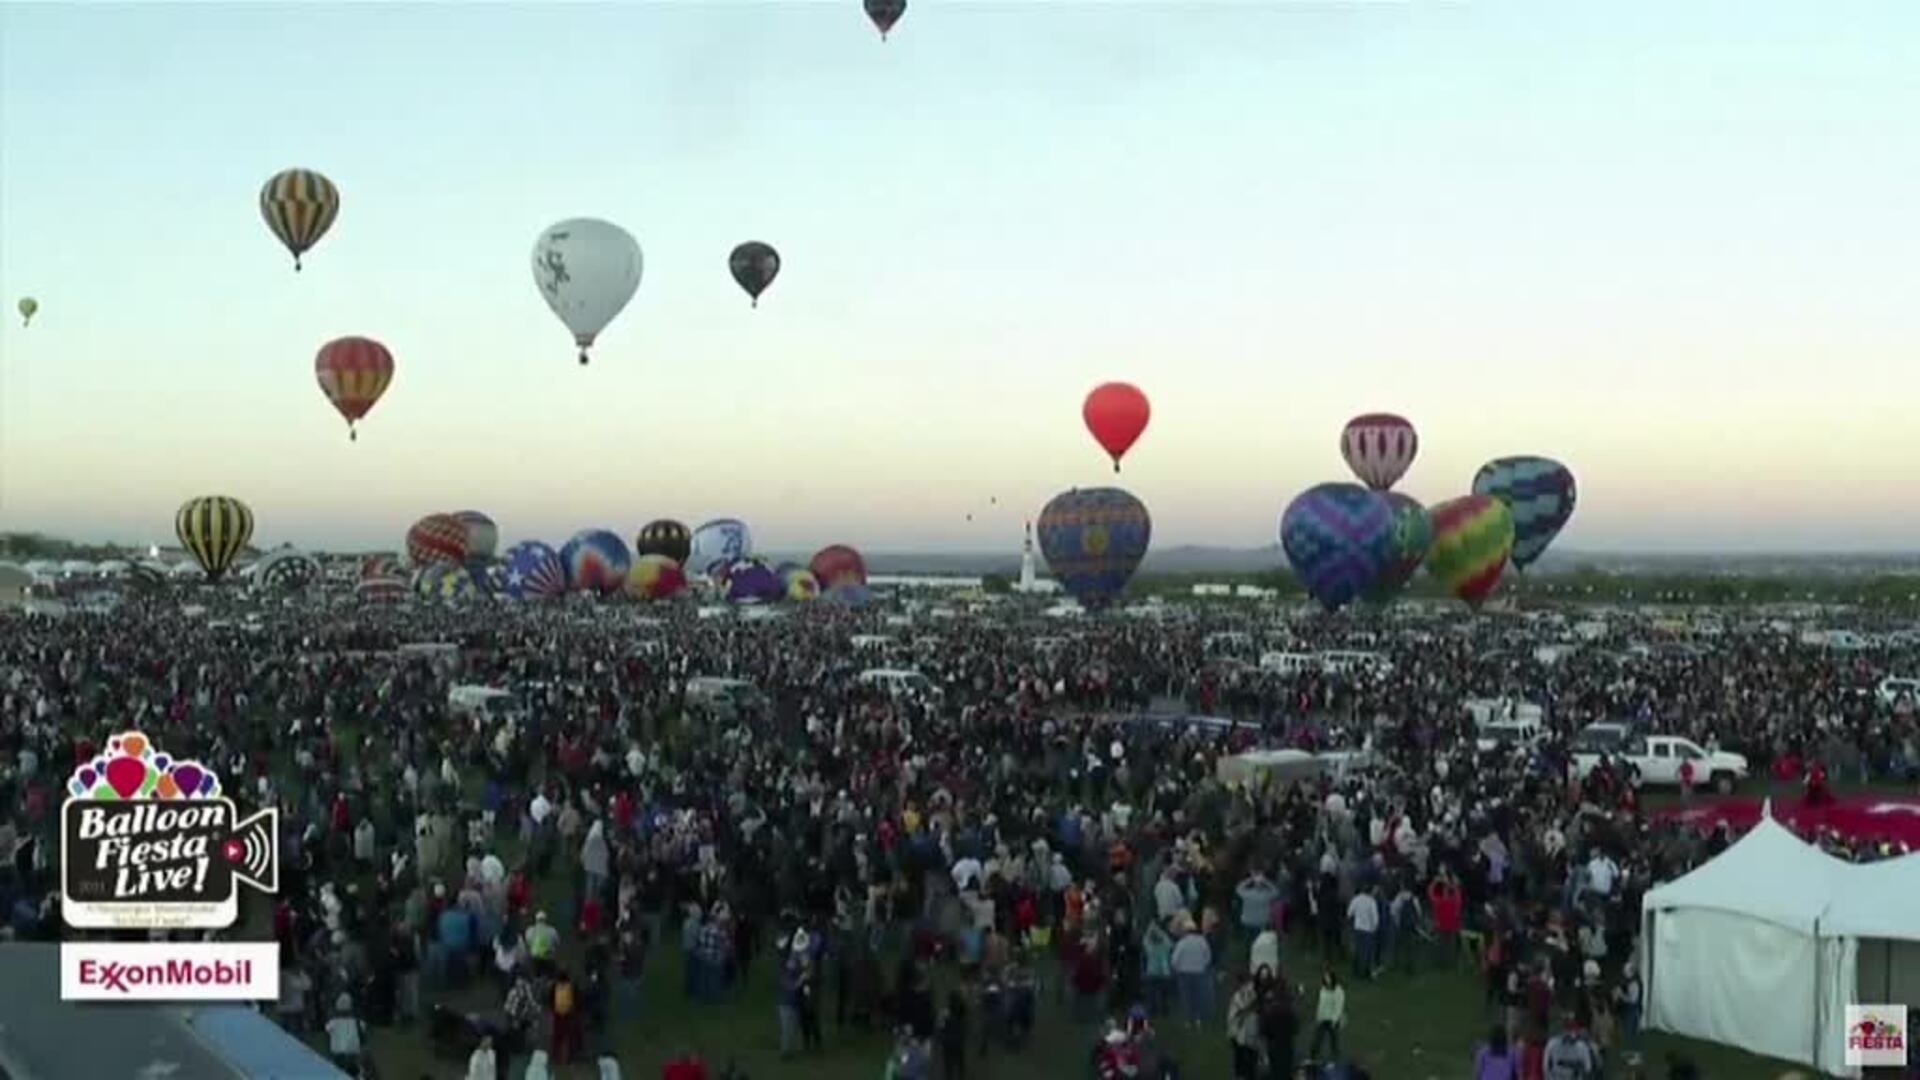 Los globos vuelven al cielo de Alburquerque, en Nuevo Mexico